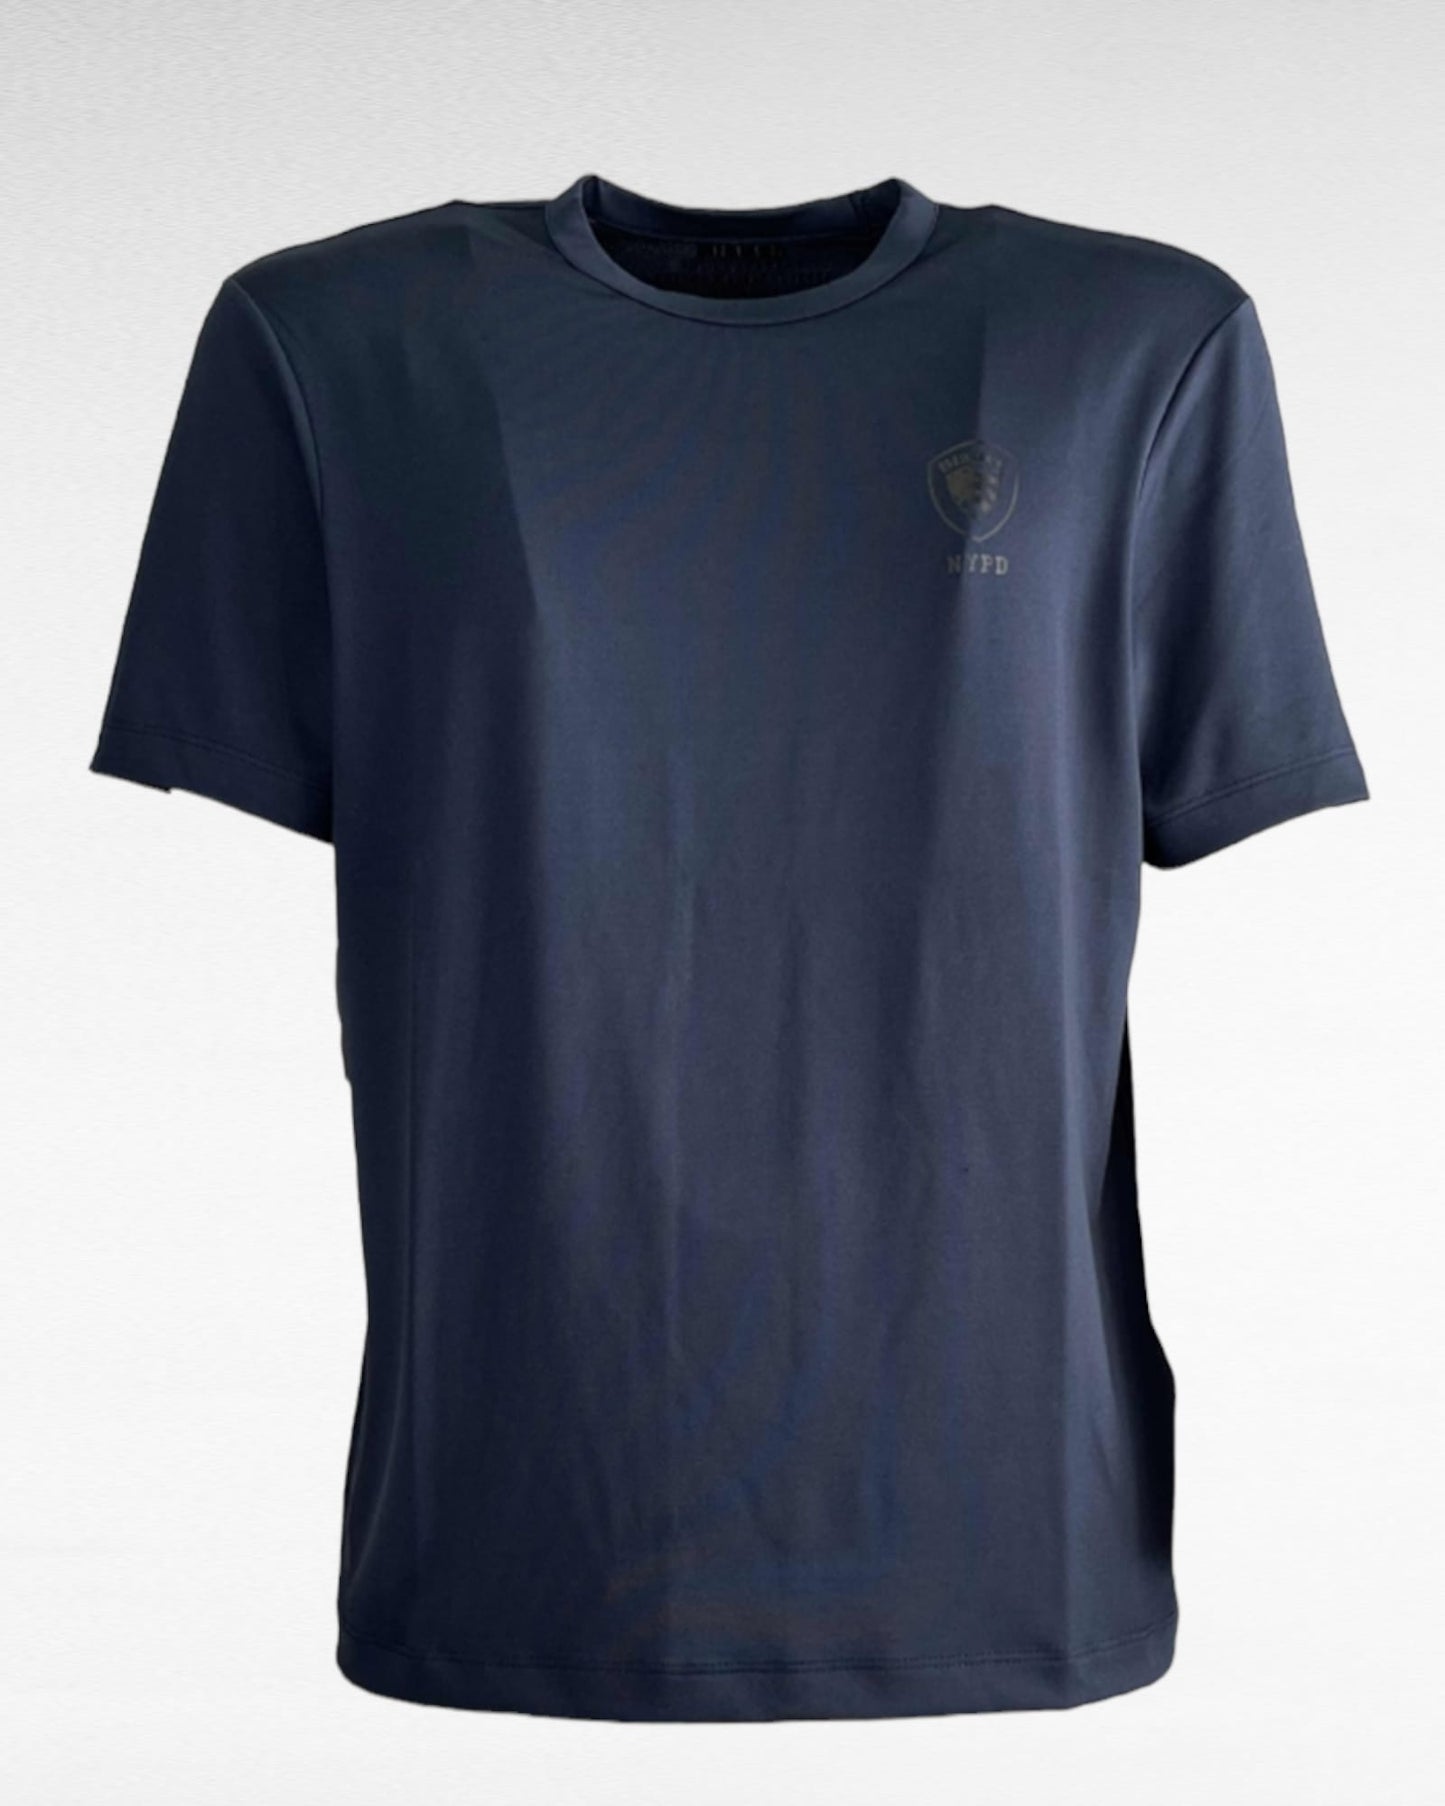 T-Shirt Blauer in morbido tessuto 23sbluh0 2187